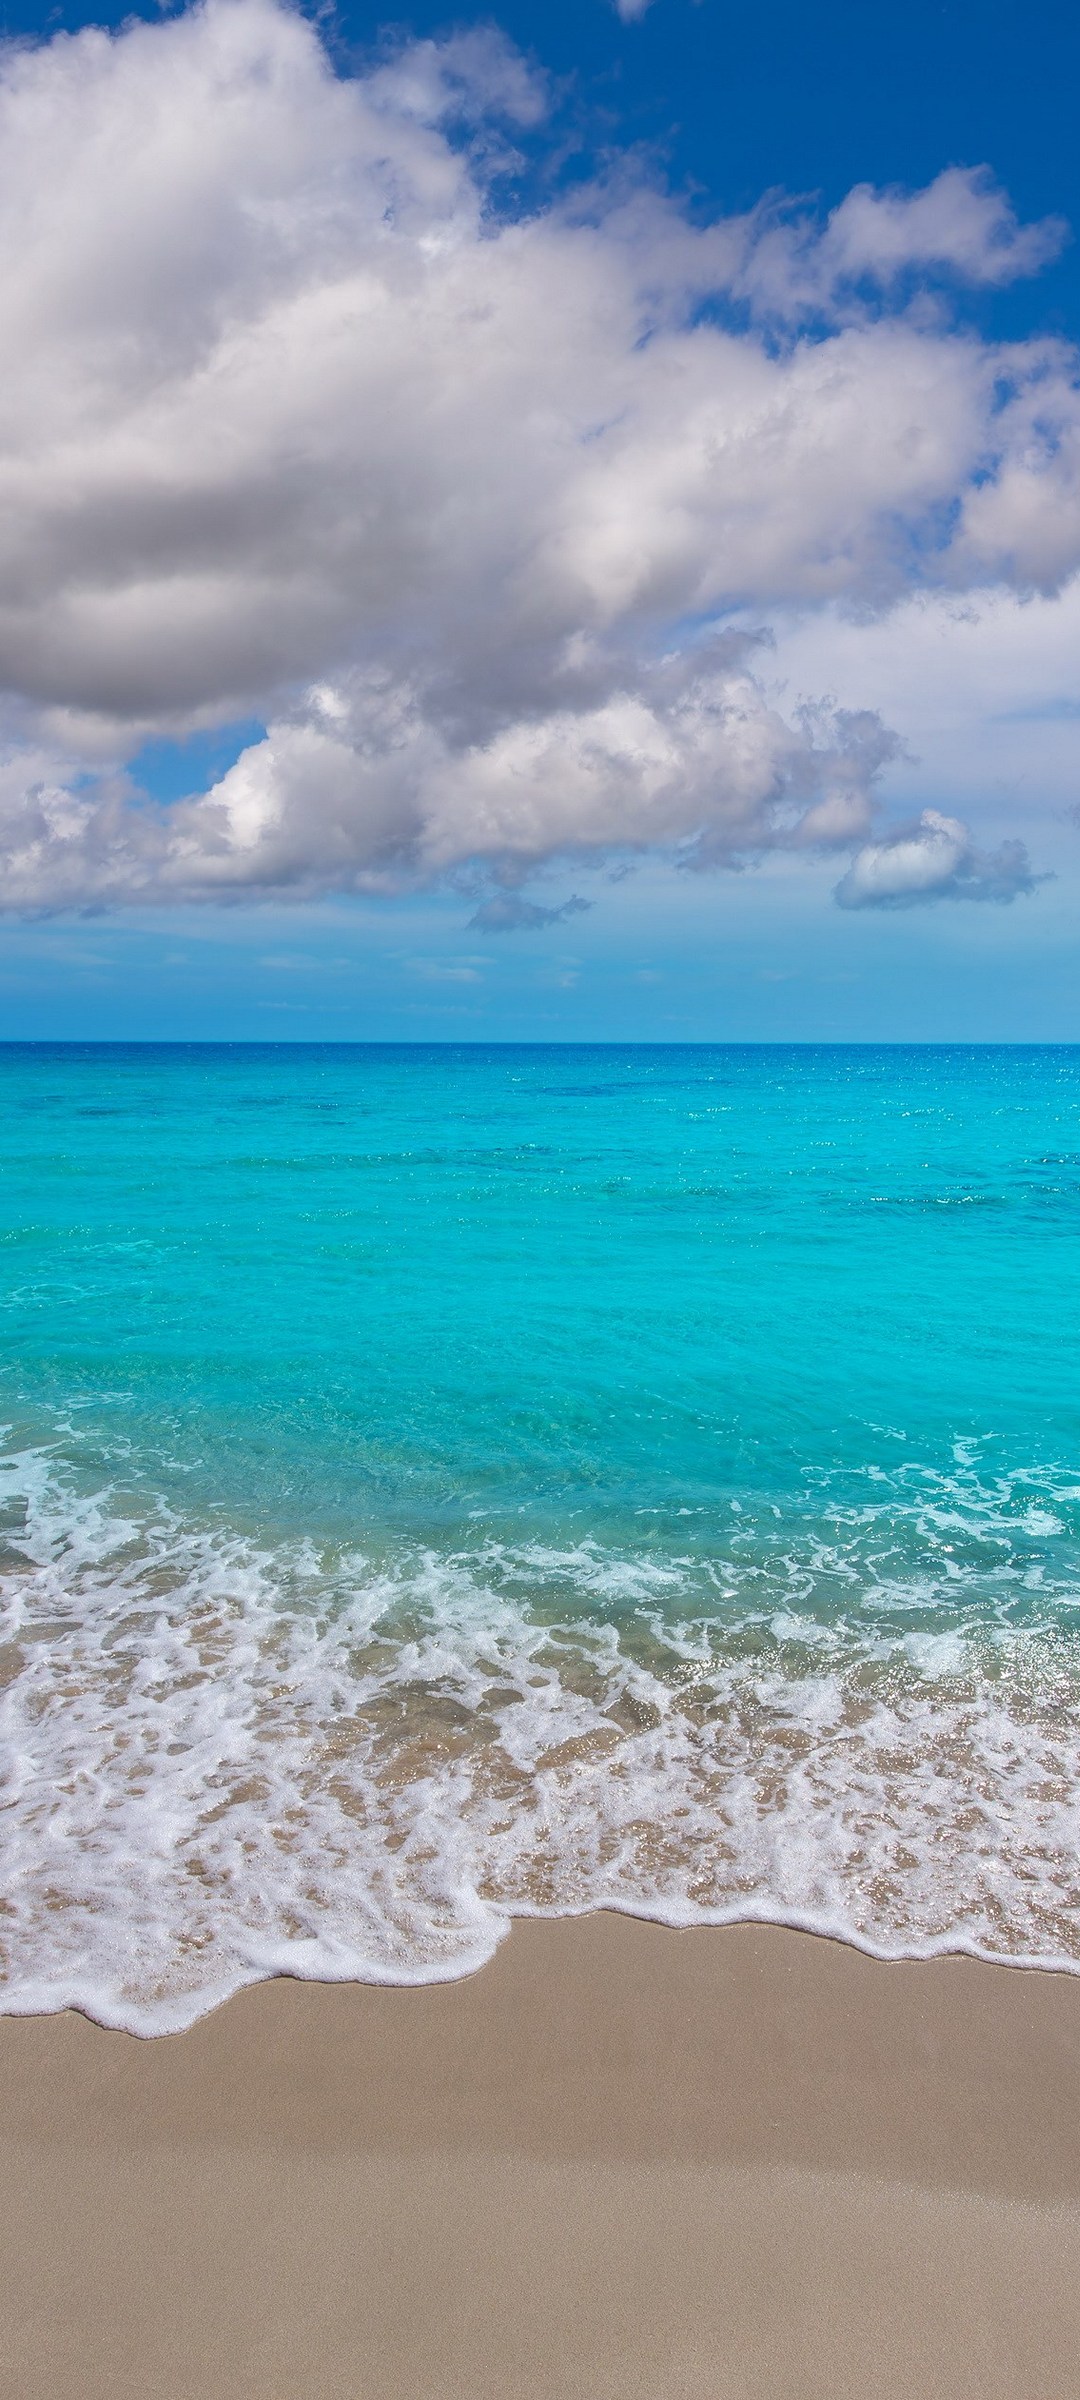 水色の綺麗な海と砂浜と青空 Galaxy S21 5g Androidスマホ壁紙 待ち受け スマラン